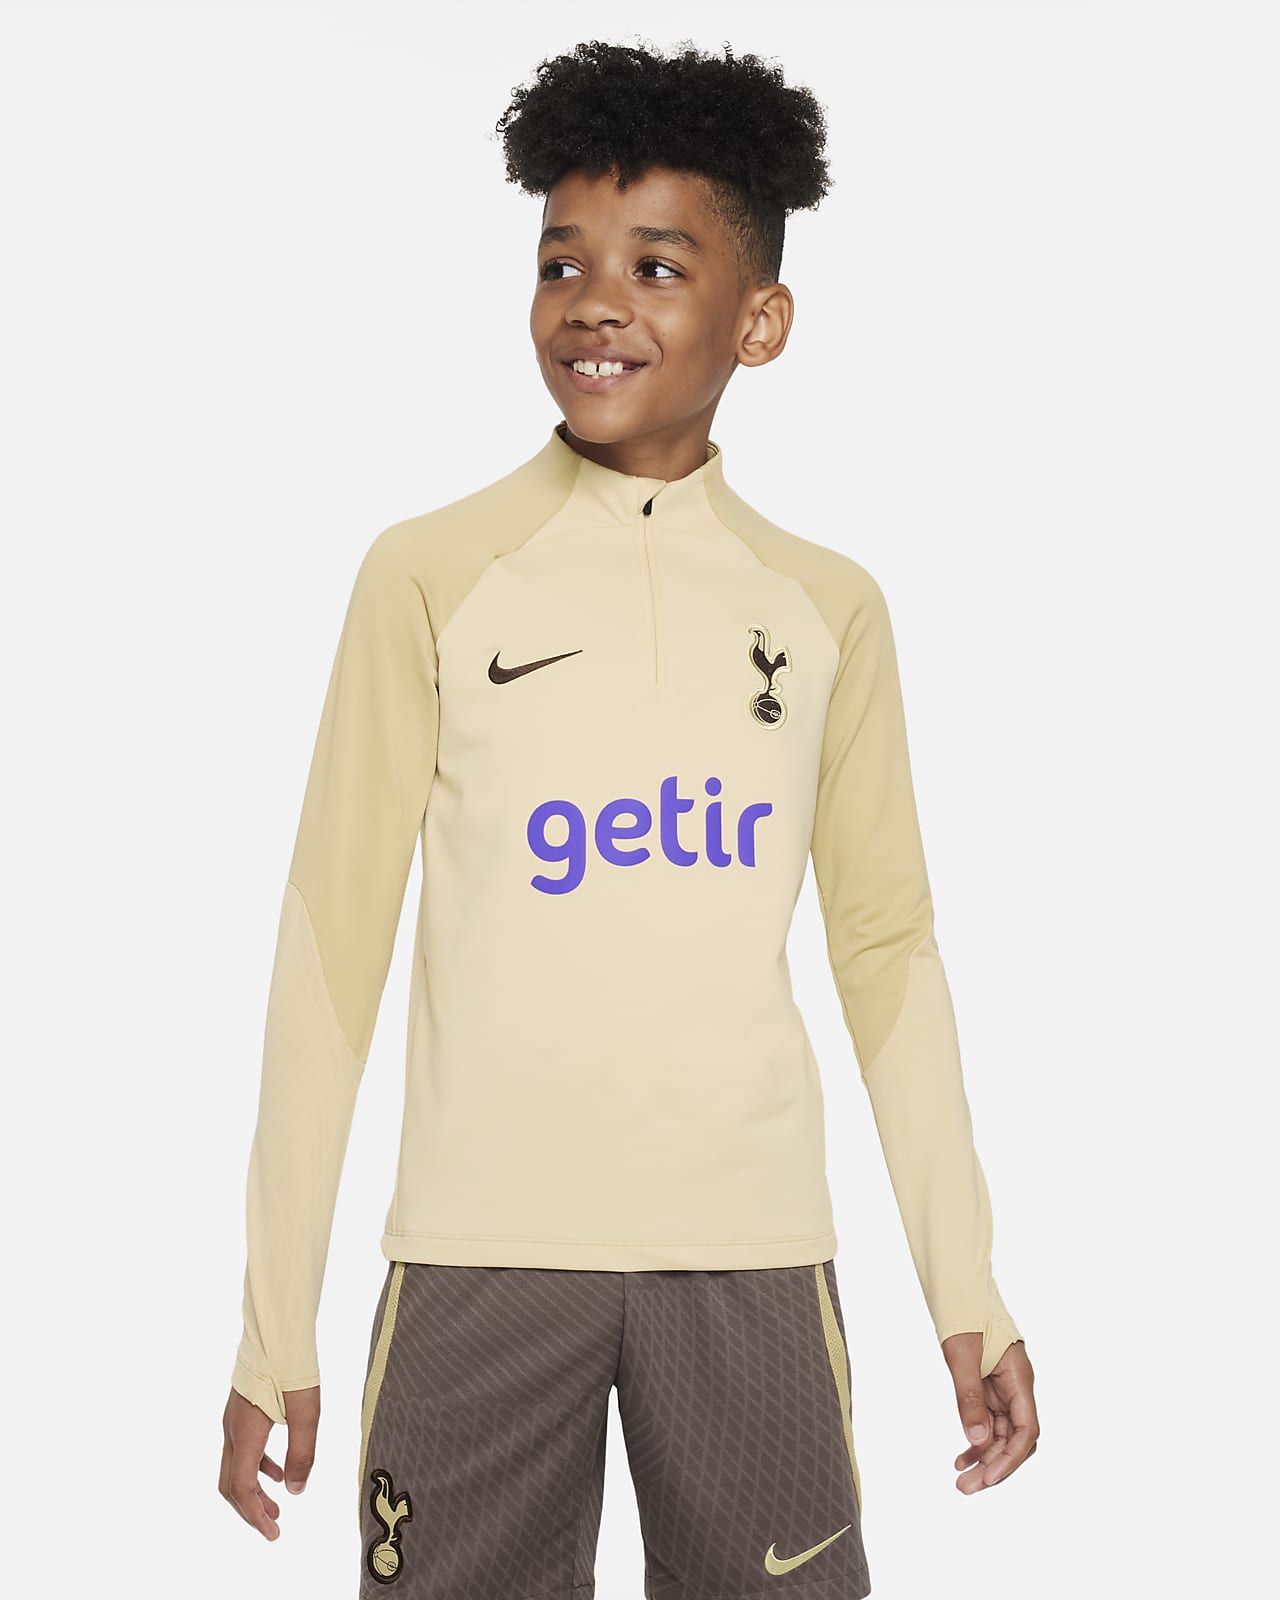 Ποδοσφαιρική πλεκτή μπλούζα προπόνησης Nike Dri-FIT εναλλακτικής εμφάνισης Τότεναμ Strike για μεγάλα παιδιά